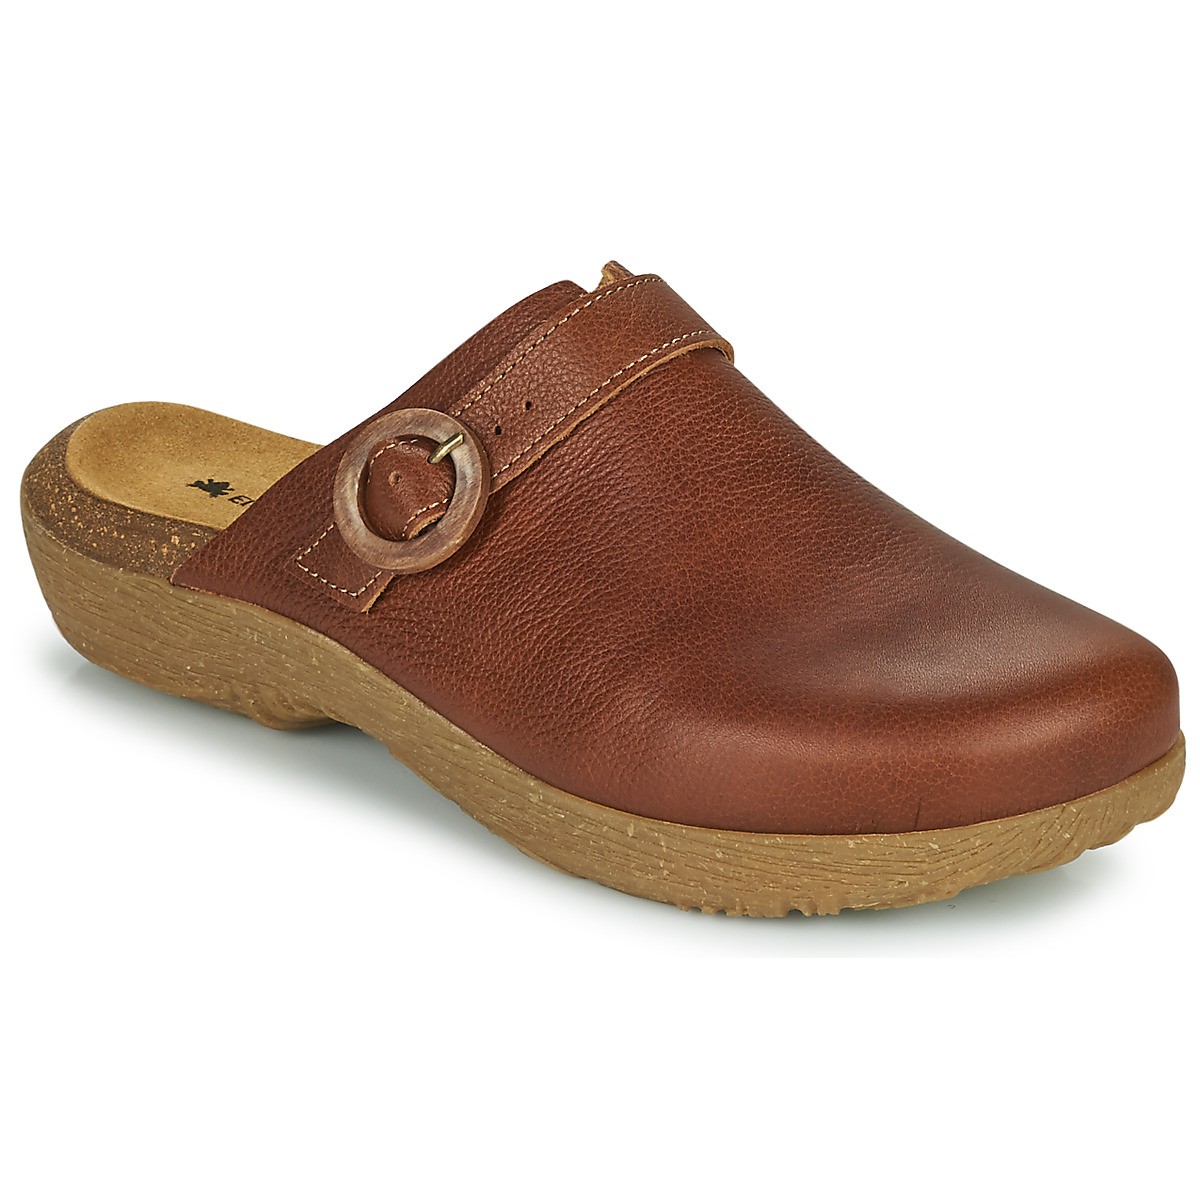 el naturalista  wakatiwai  women's clogs (shoes) in brown